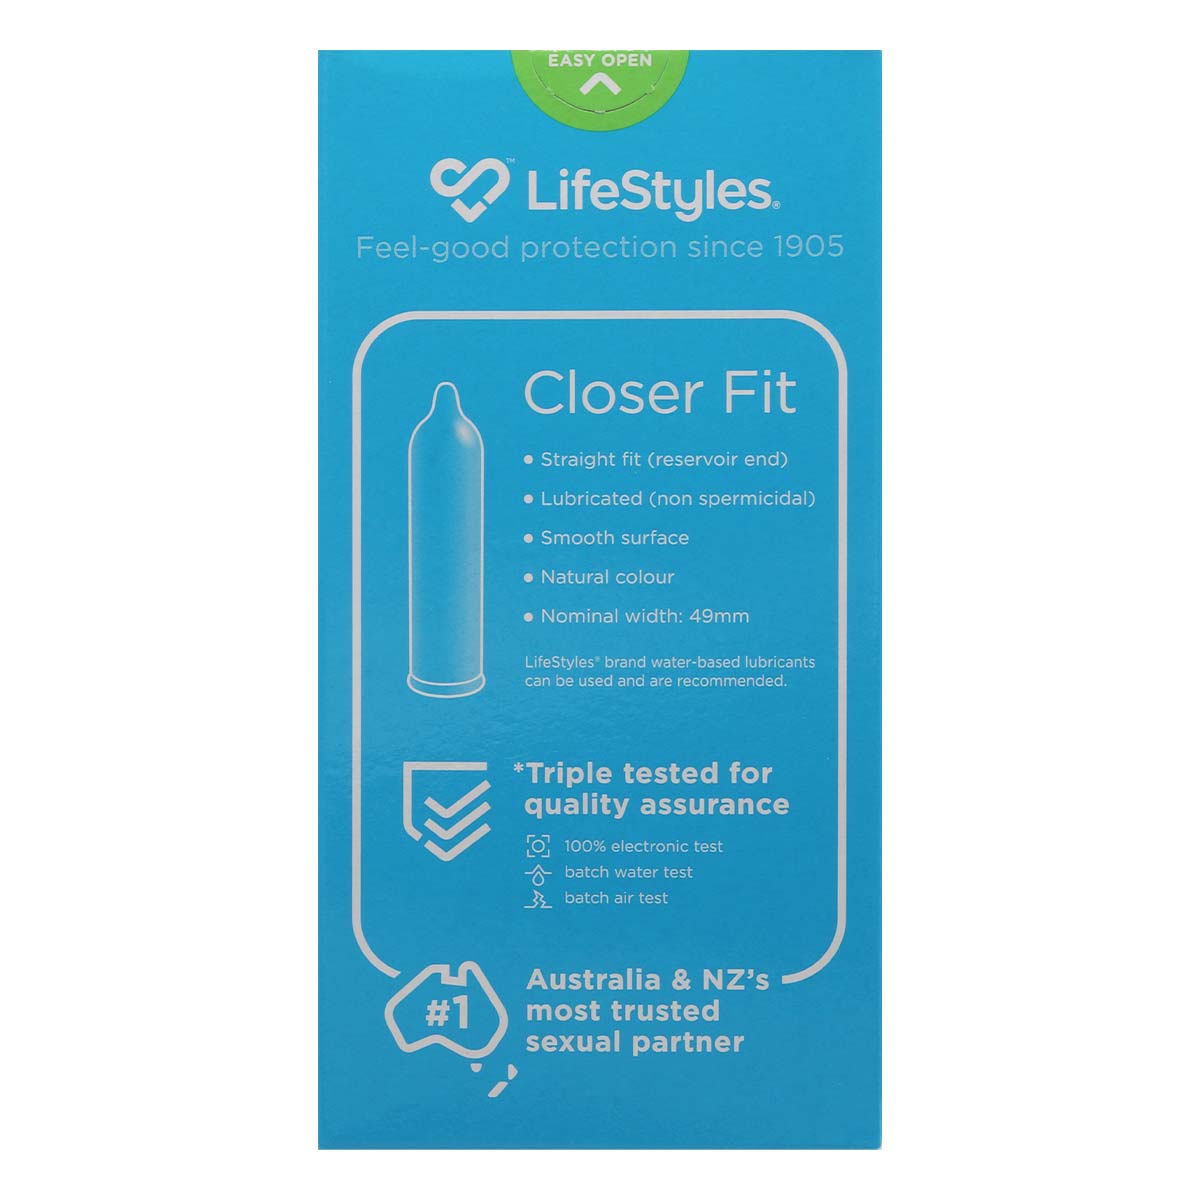 LifeStyles 紧贴 49mm 乳胶安全套 10 片装-p_3